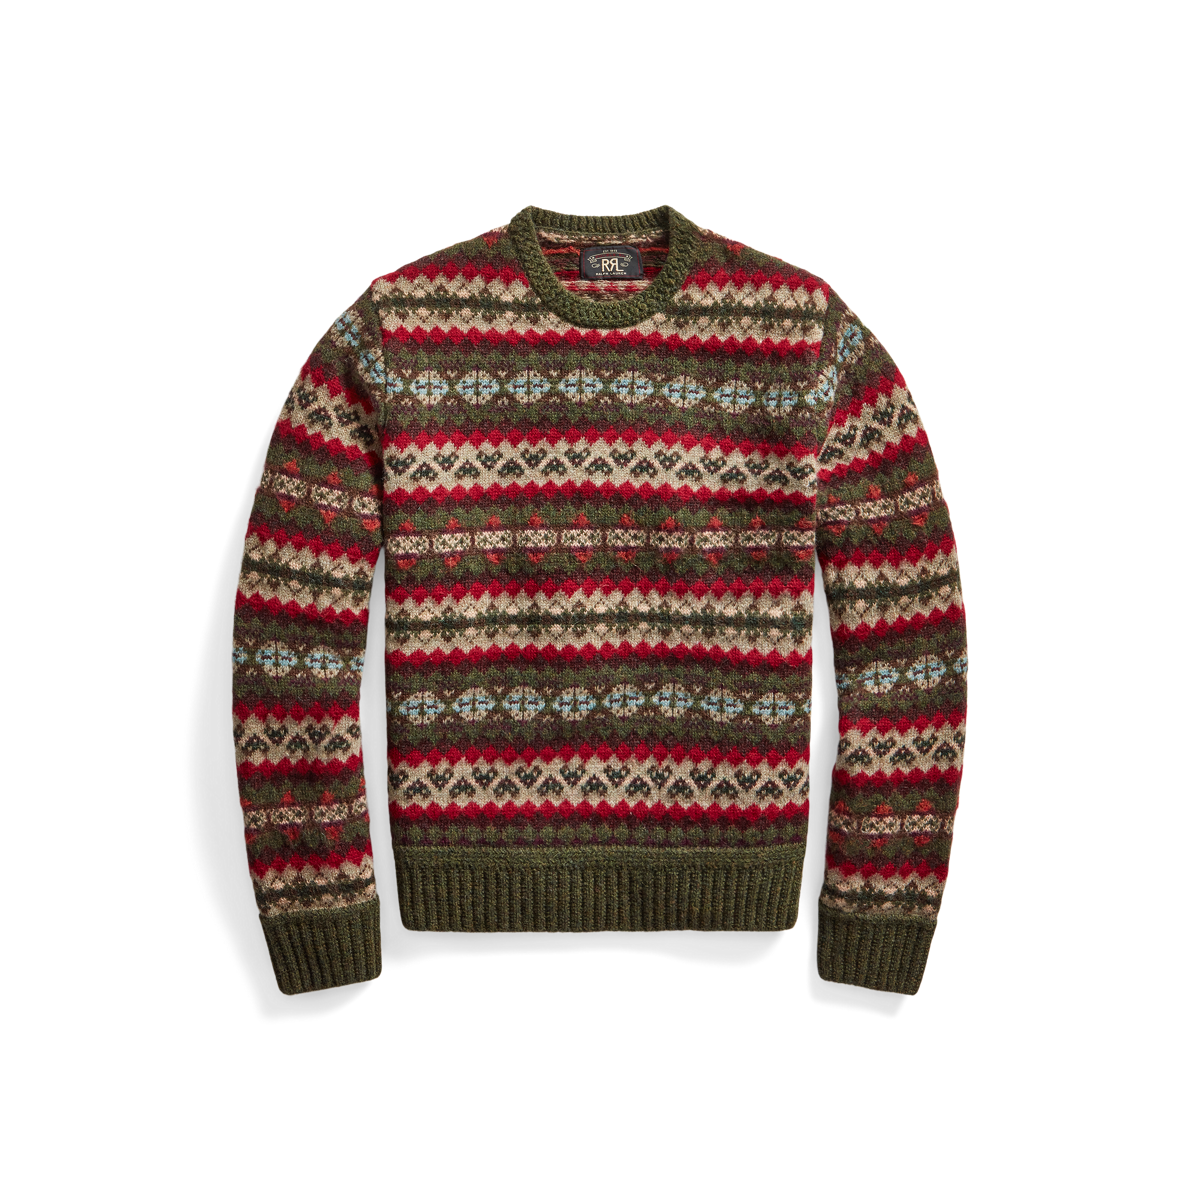 Aprender acerca 76+ imagen polo ralph lauren fair isle wool blend sweater